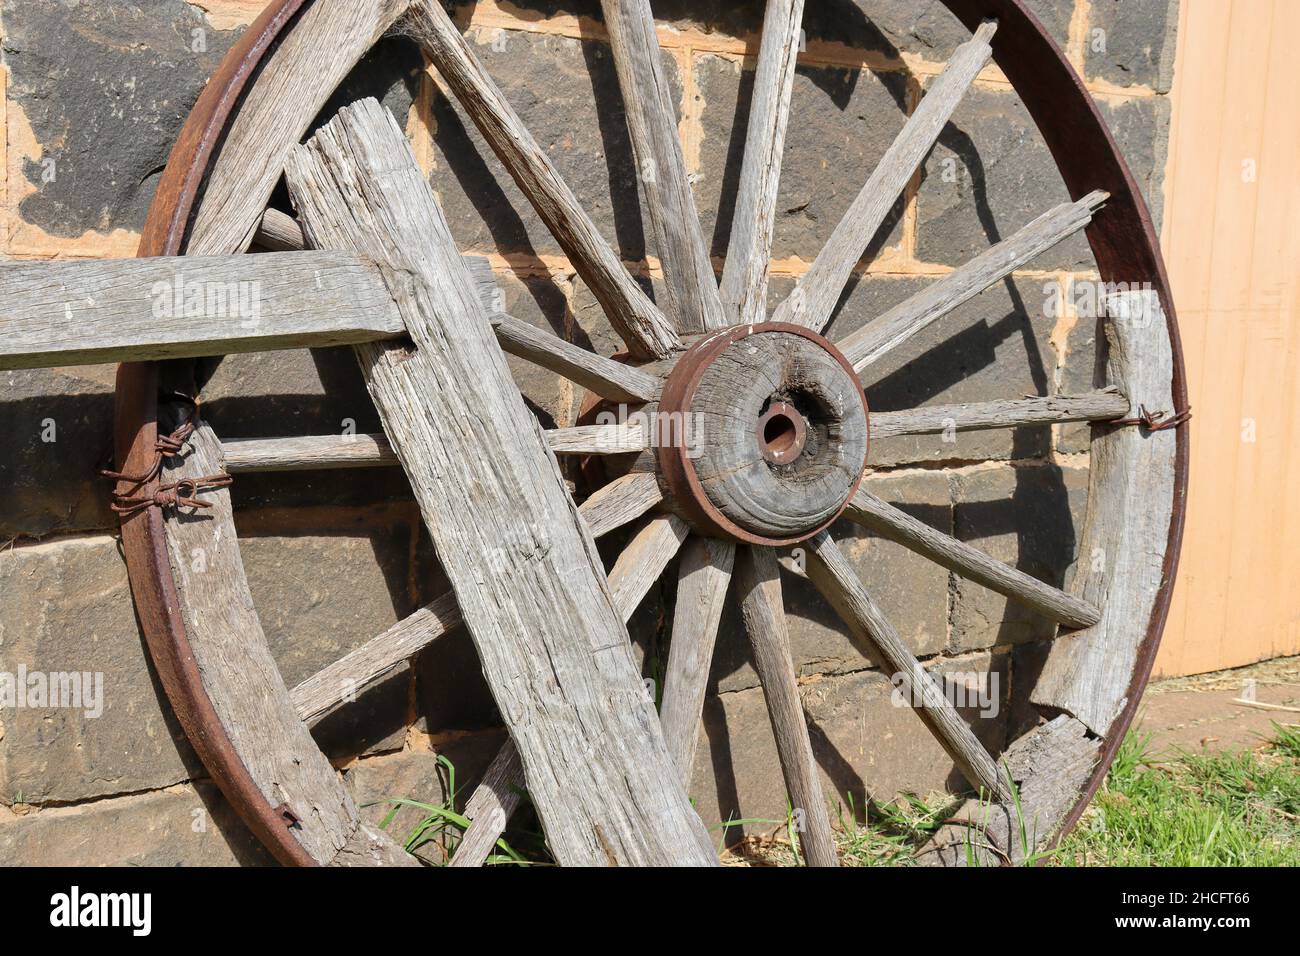 Antica ruota carrozza in legno con bordo in metallo appoggiato a un muro in pietra Foto Stock